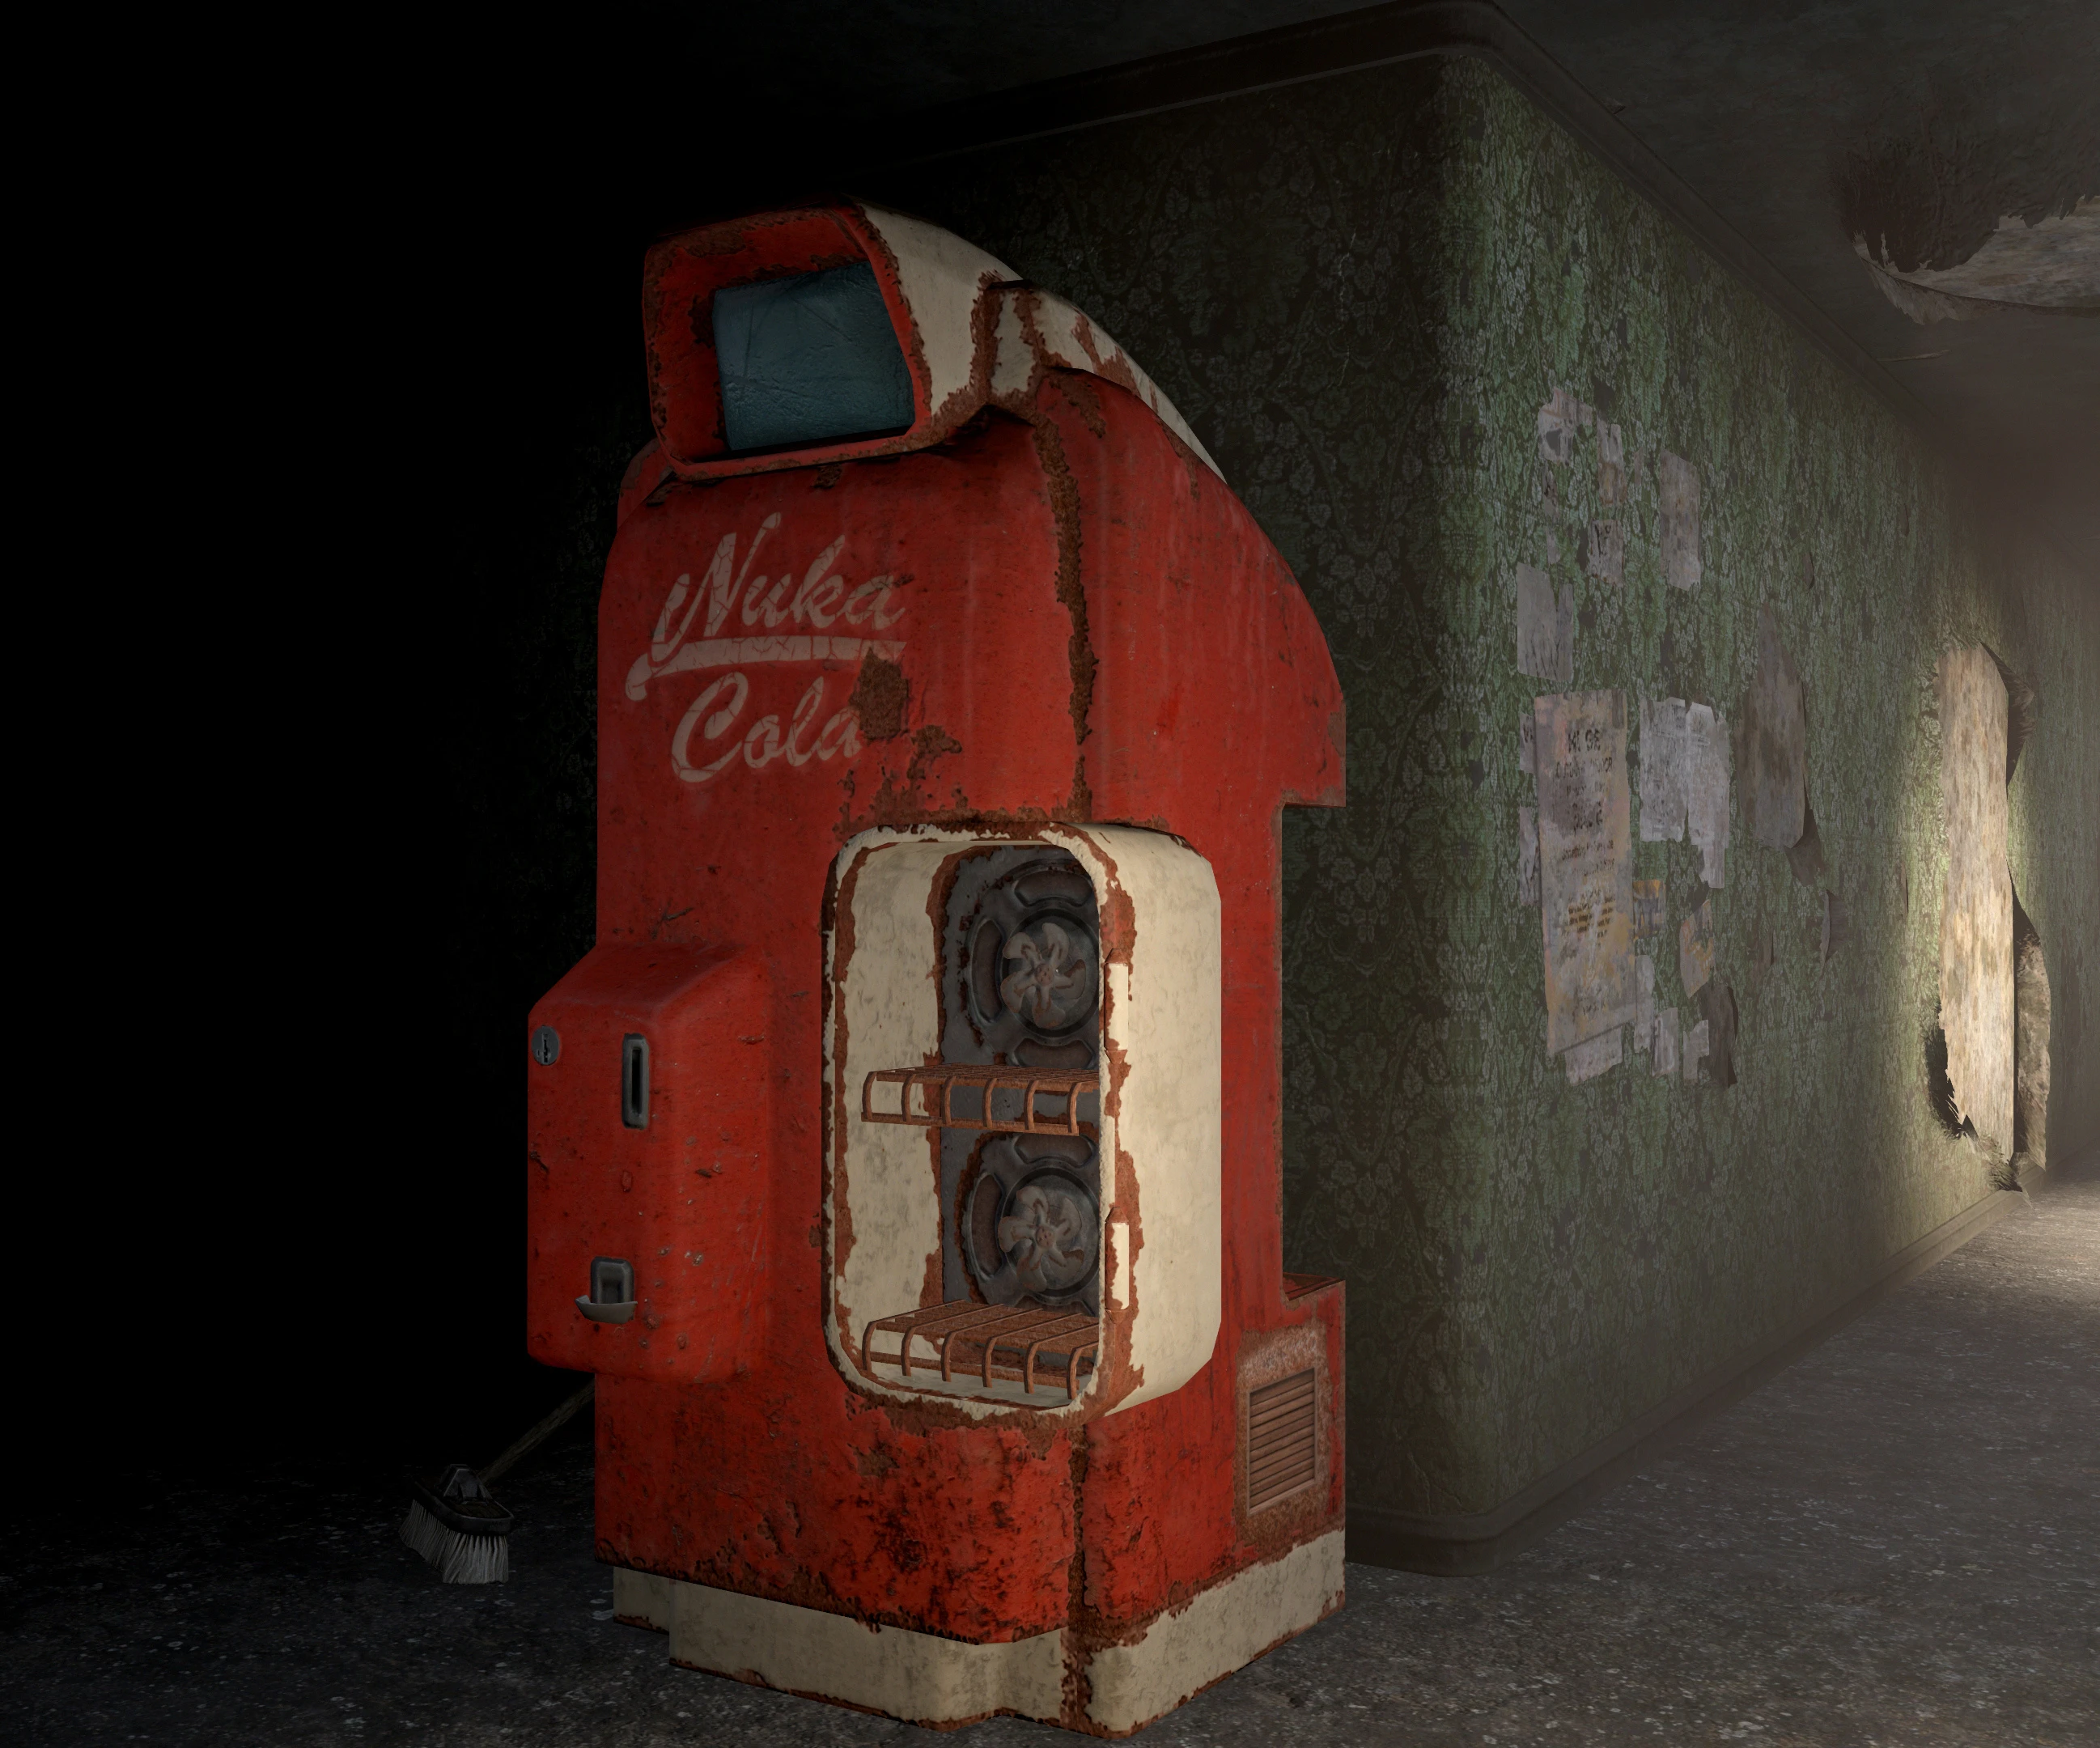 Fallout 4 нюка кола фото 35